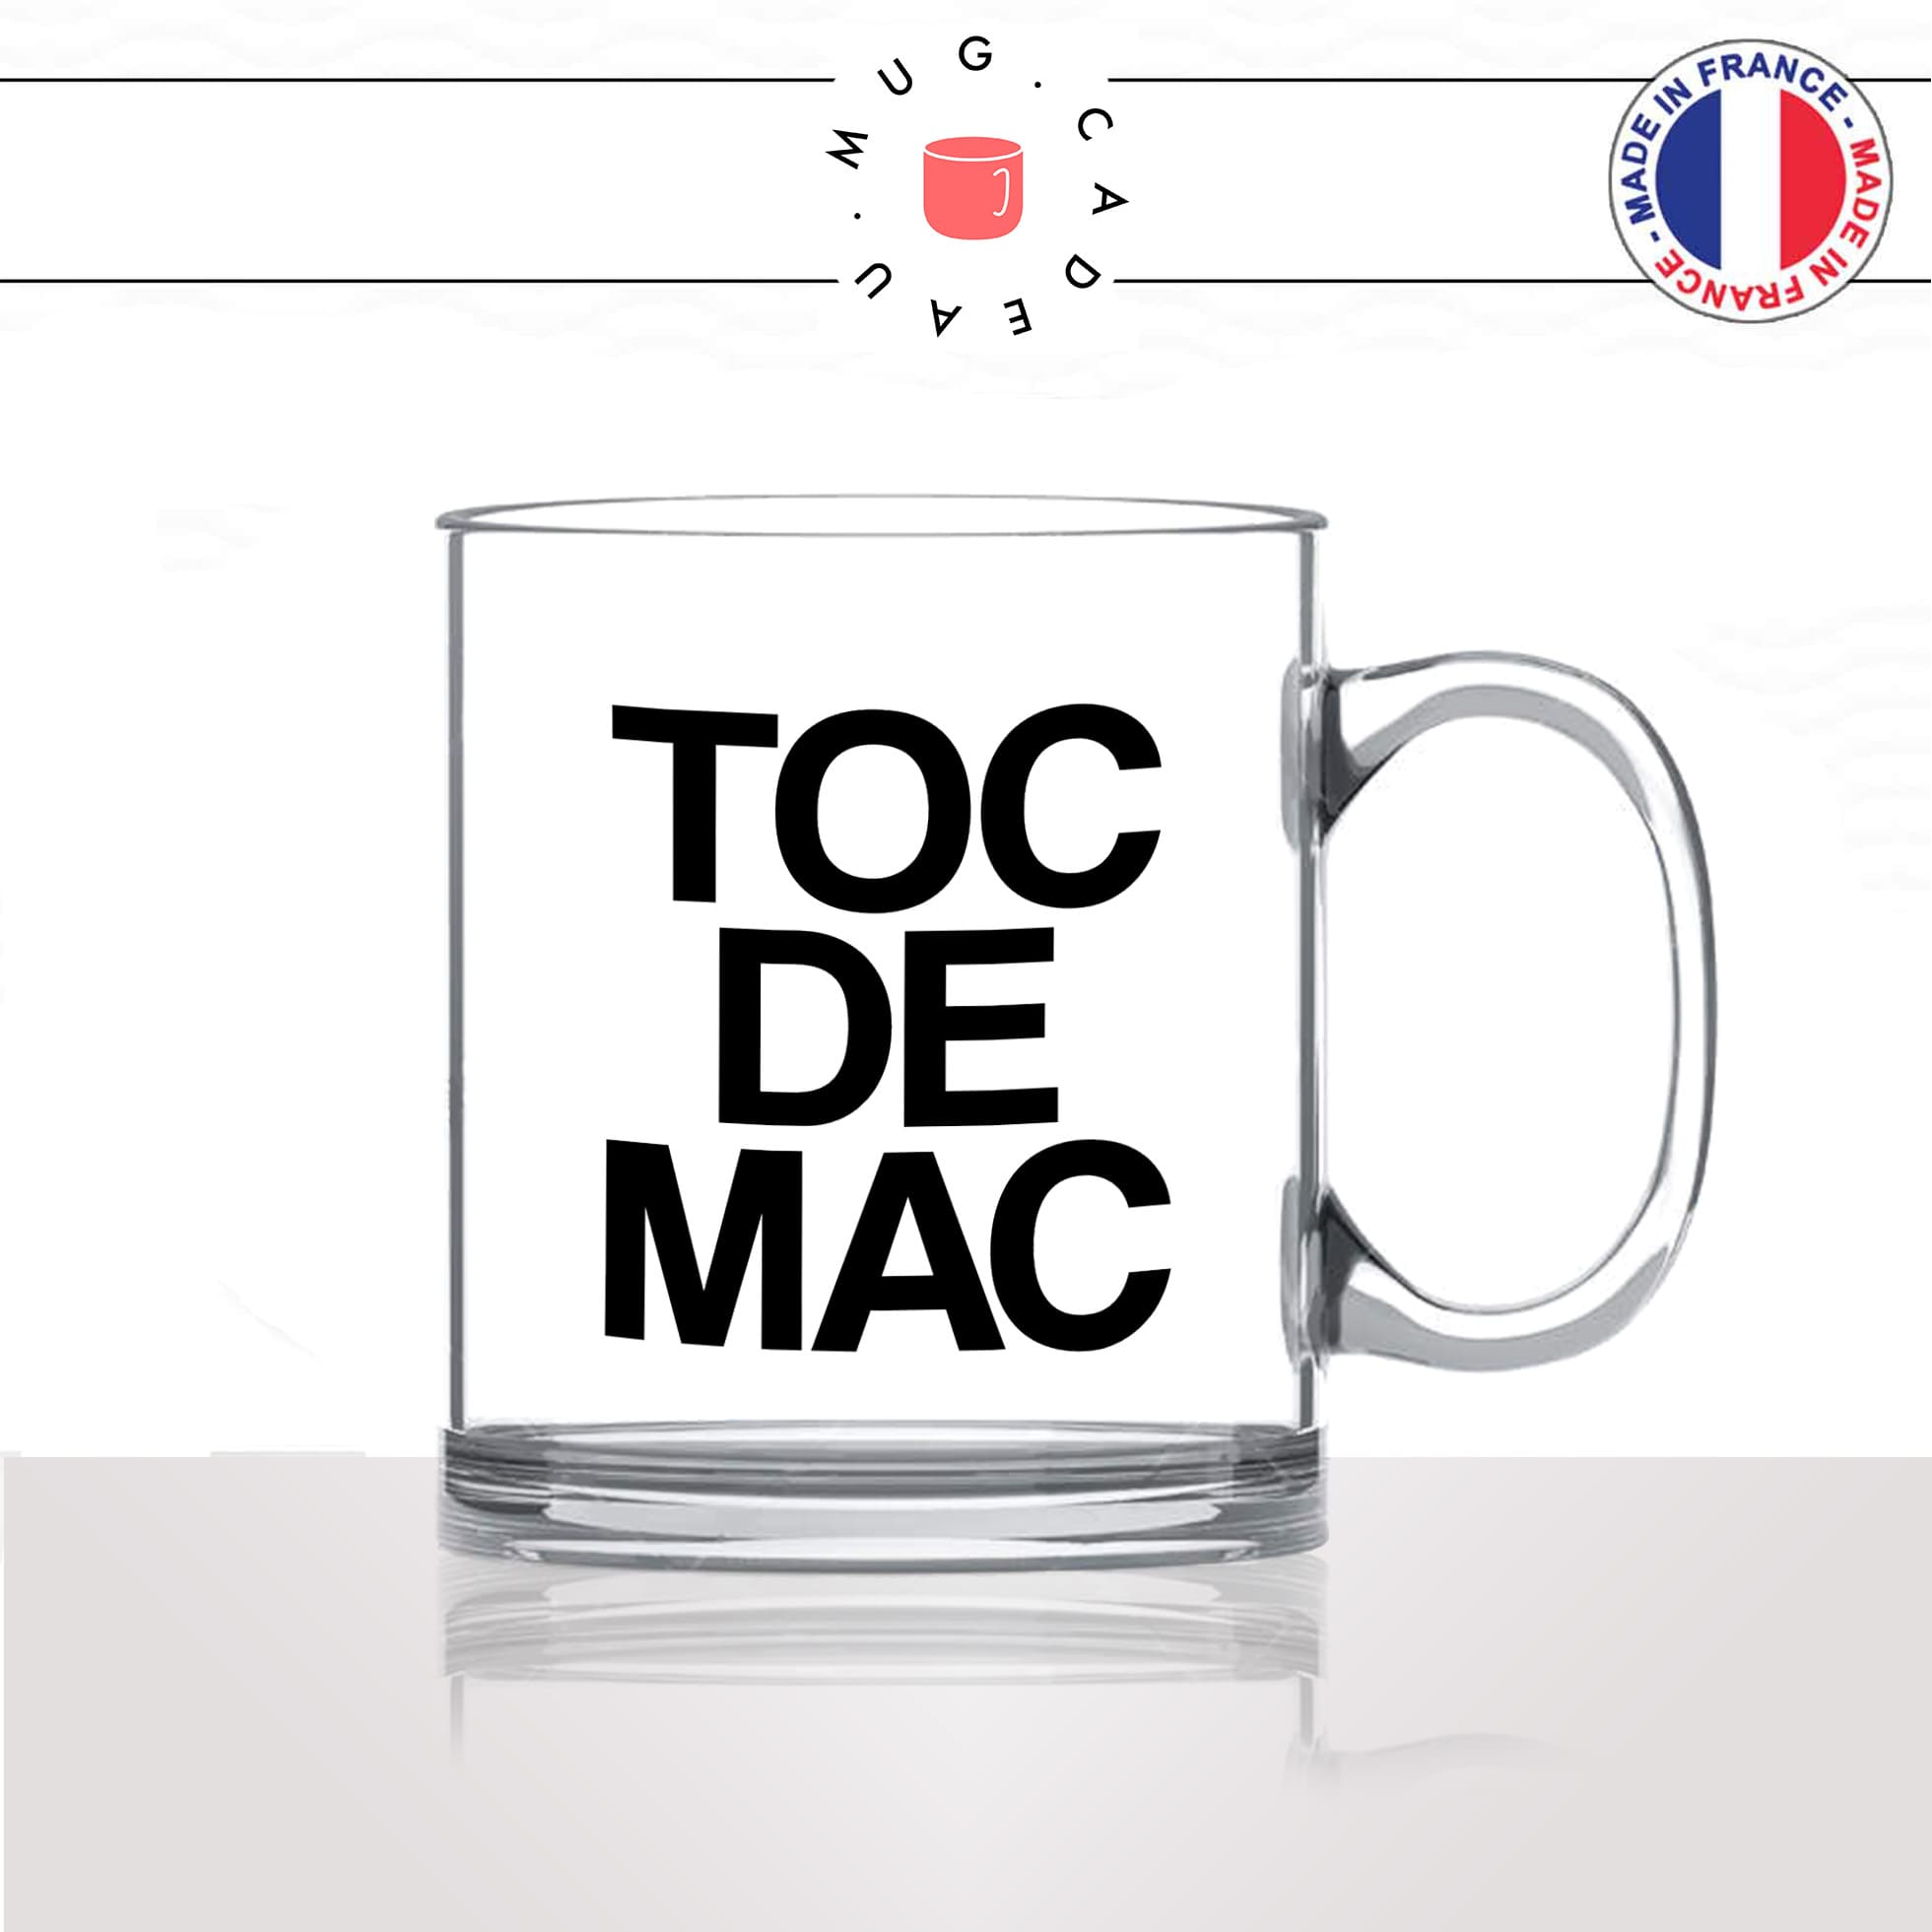 mug-tasse-en-verre-transparent-glass-toc-de-mac-trop-bien-ajaccio-corse-corsica-patois-langue-ile-de-beauté-idée-cadeau-fun-cool-café-thé2